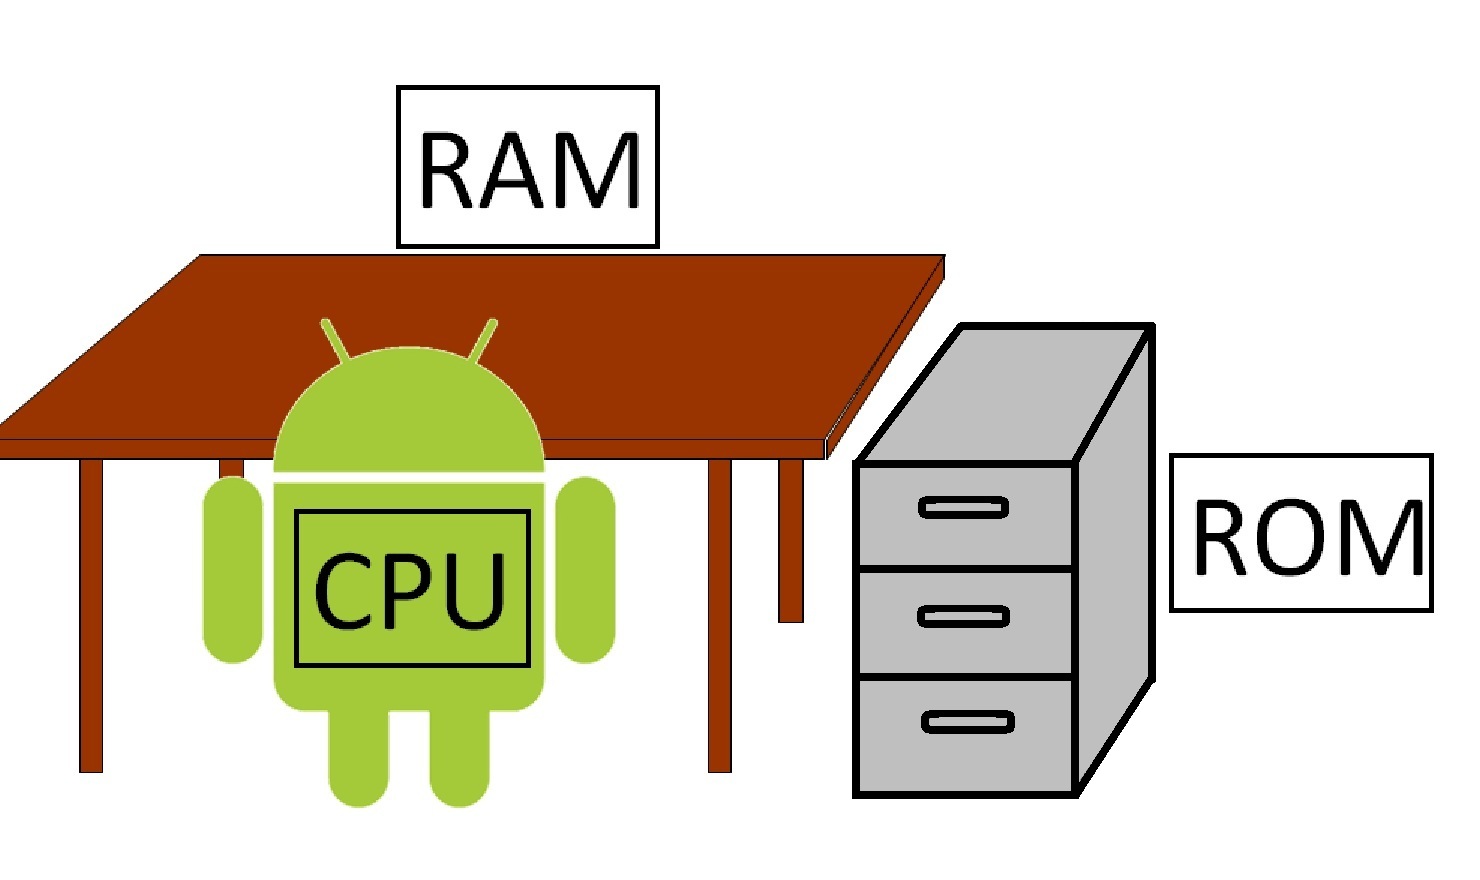 CPU,RAM,ROM